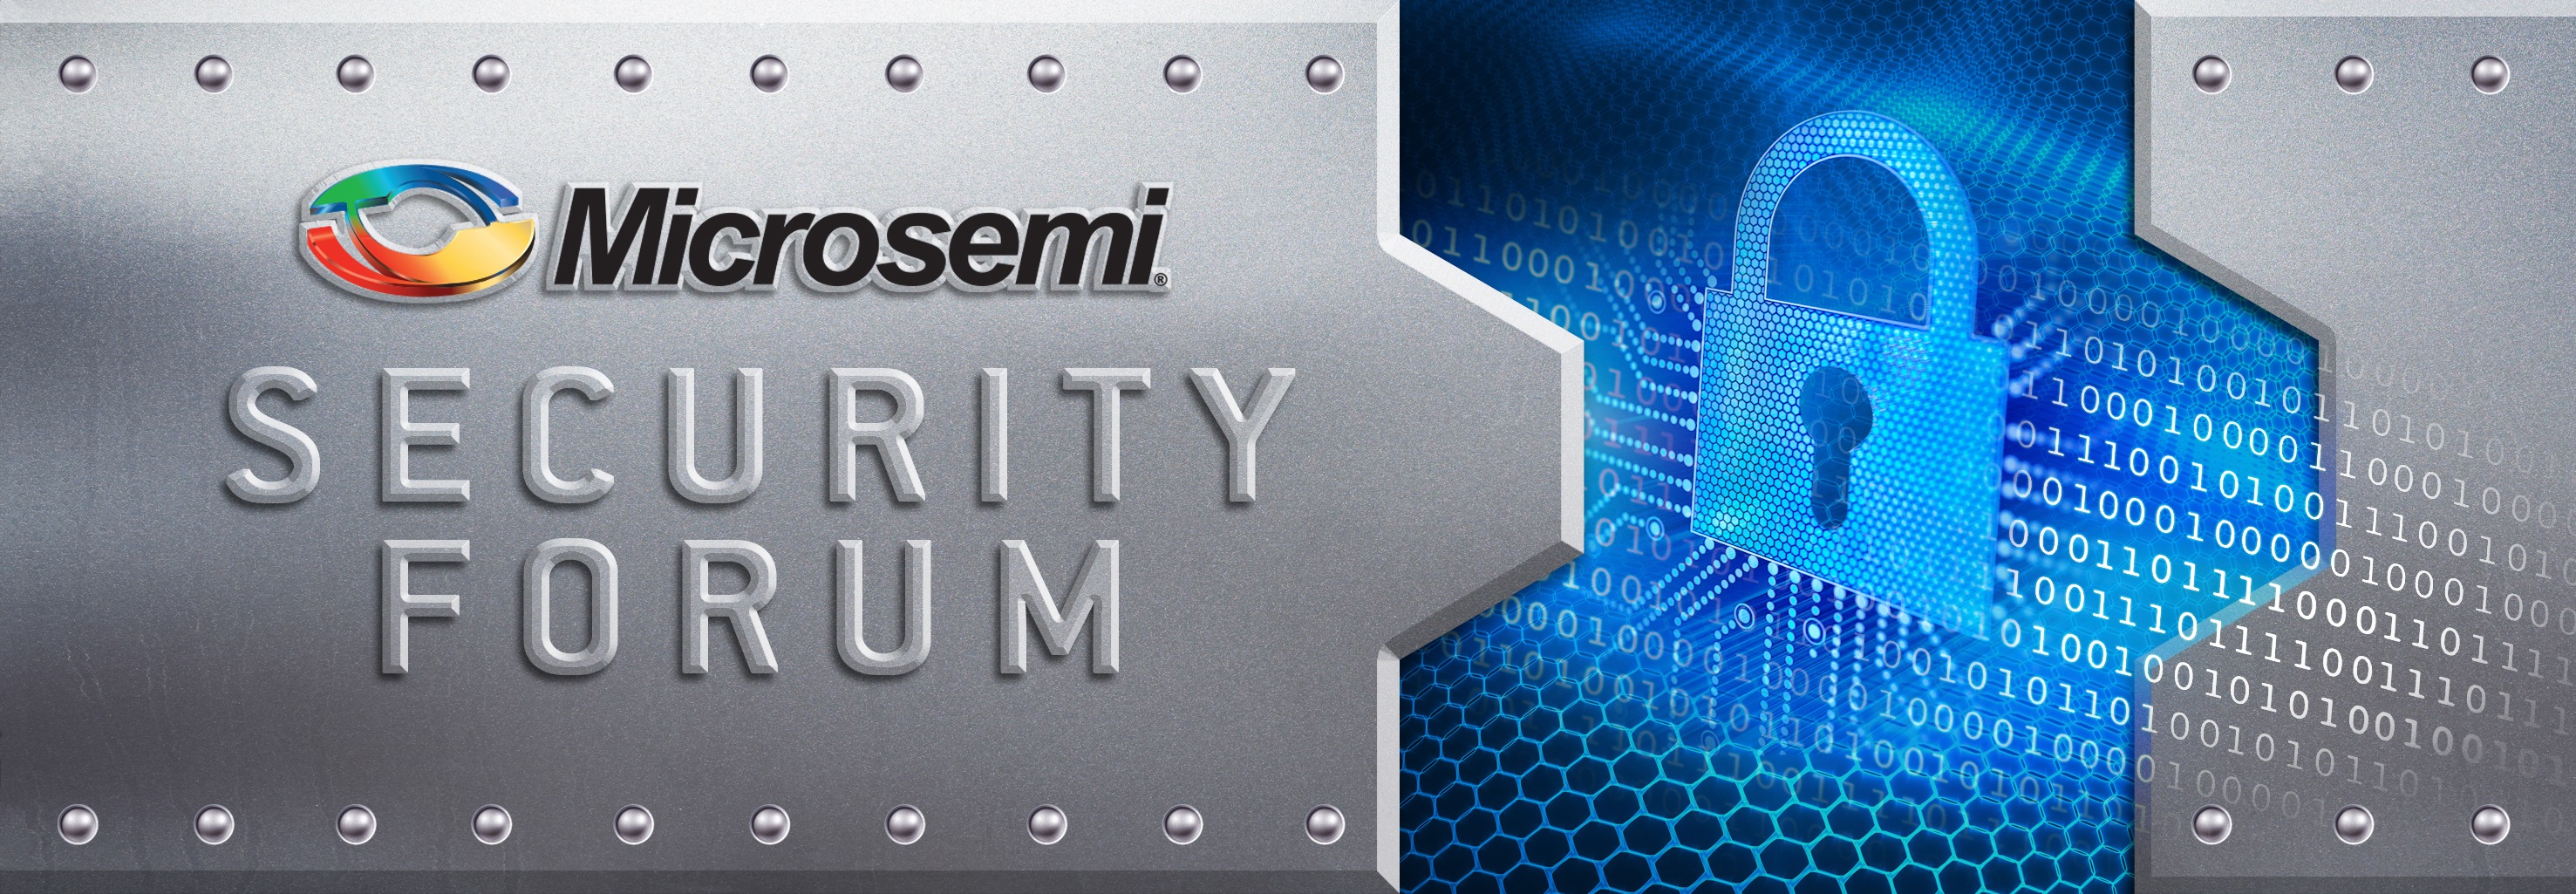 Security Forum 2017 | Microsemi